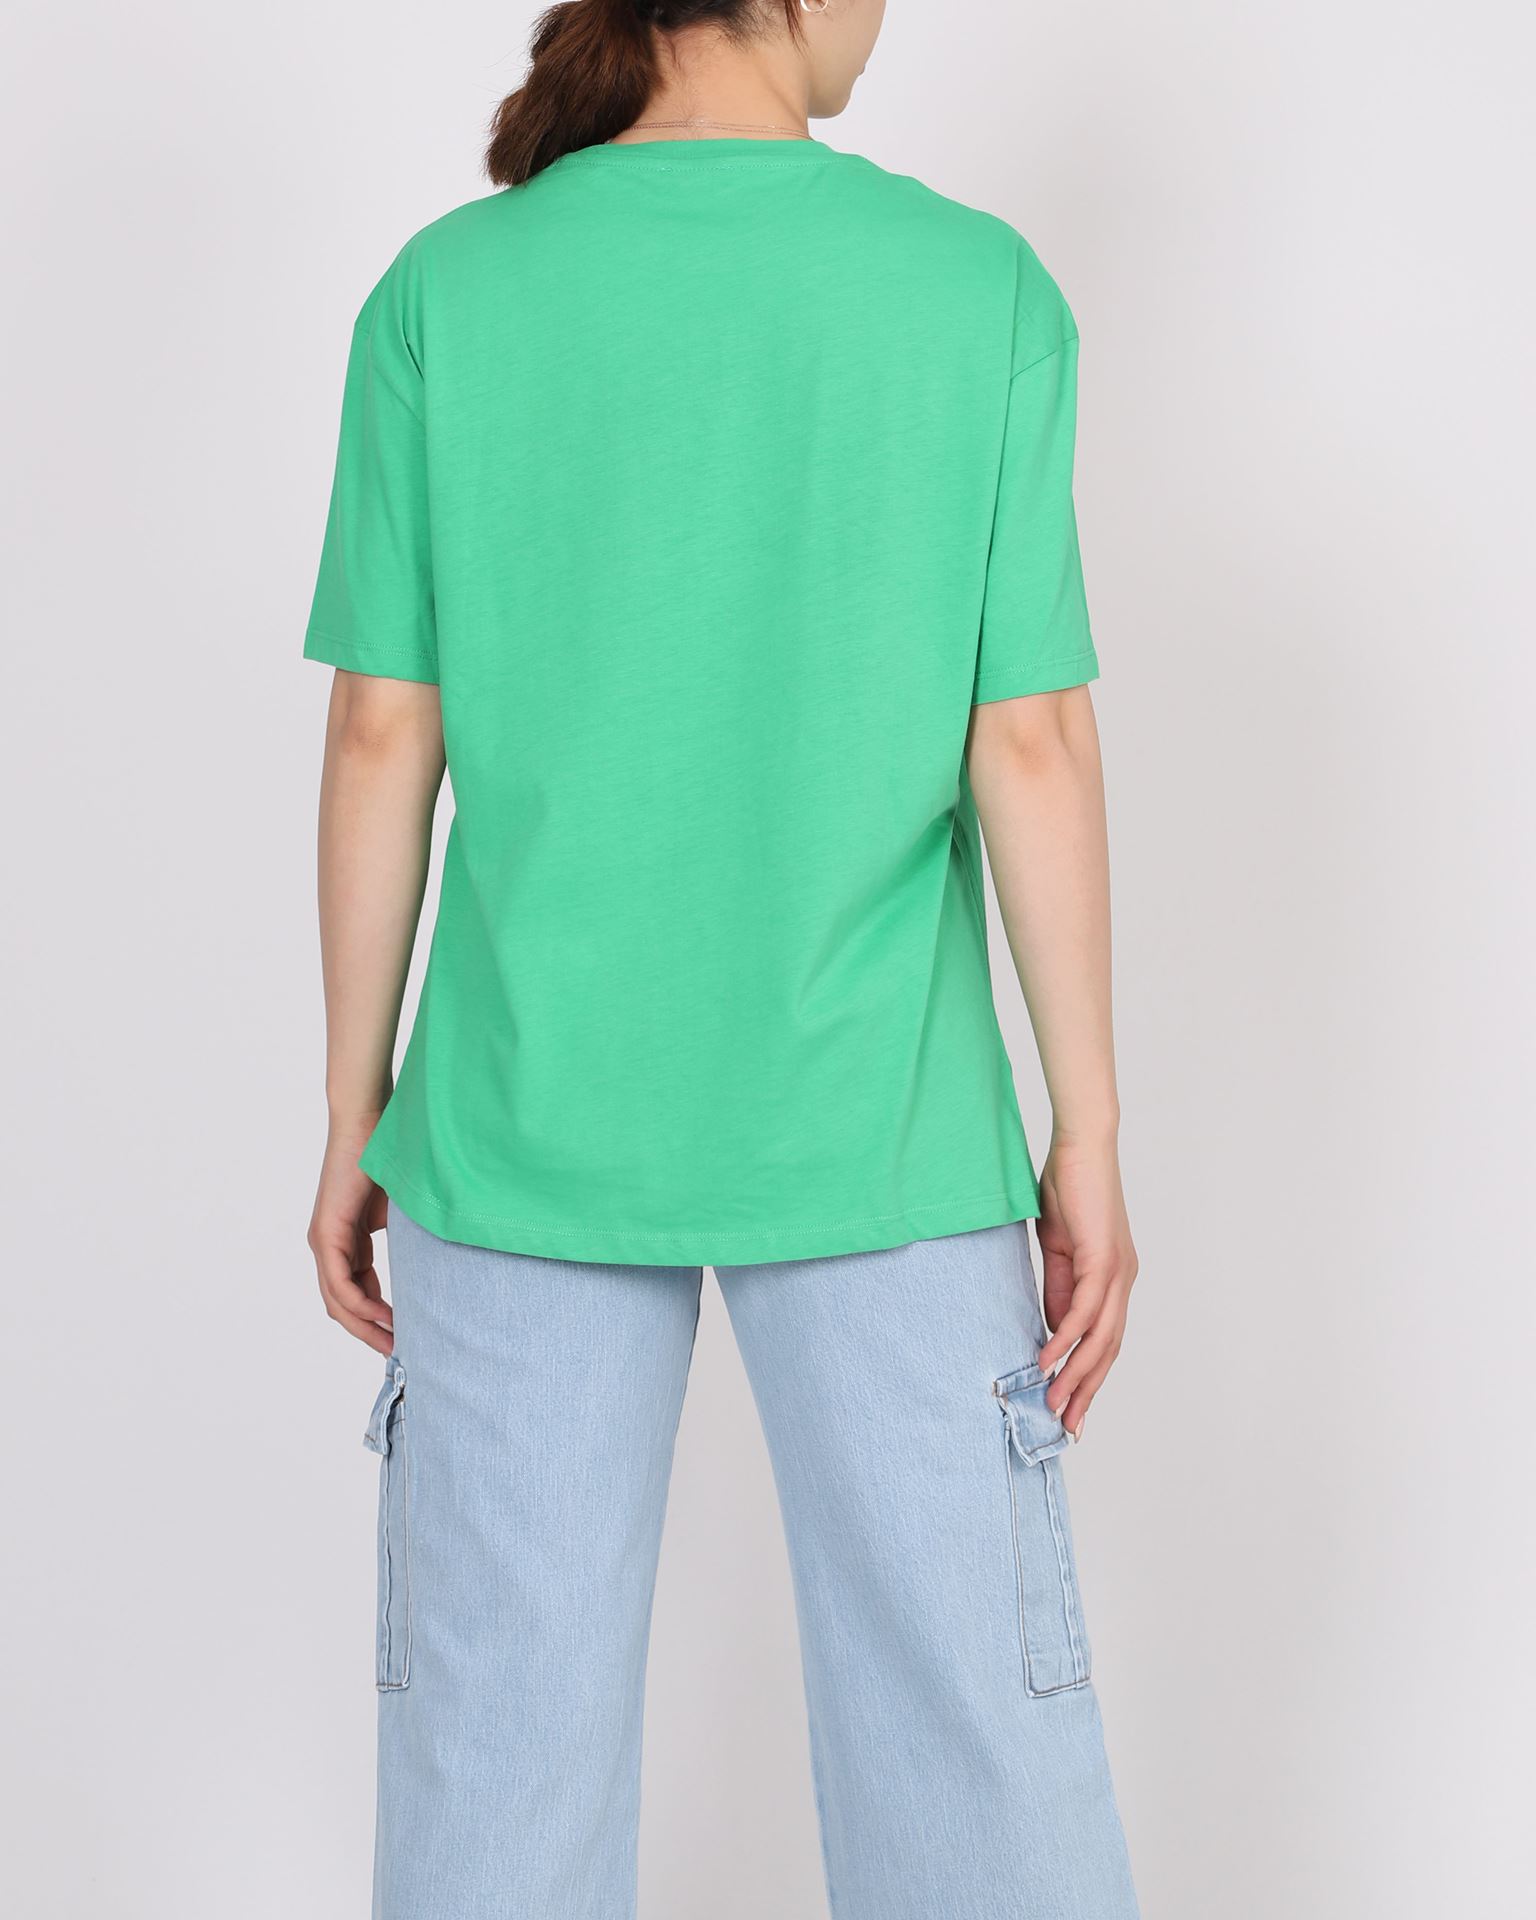 Yeşil Baskılı T-shirt TSH385